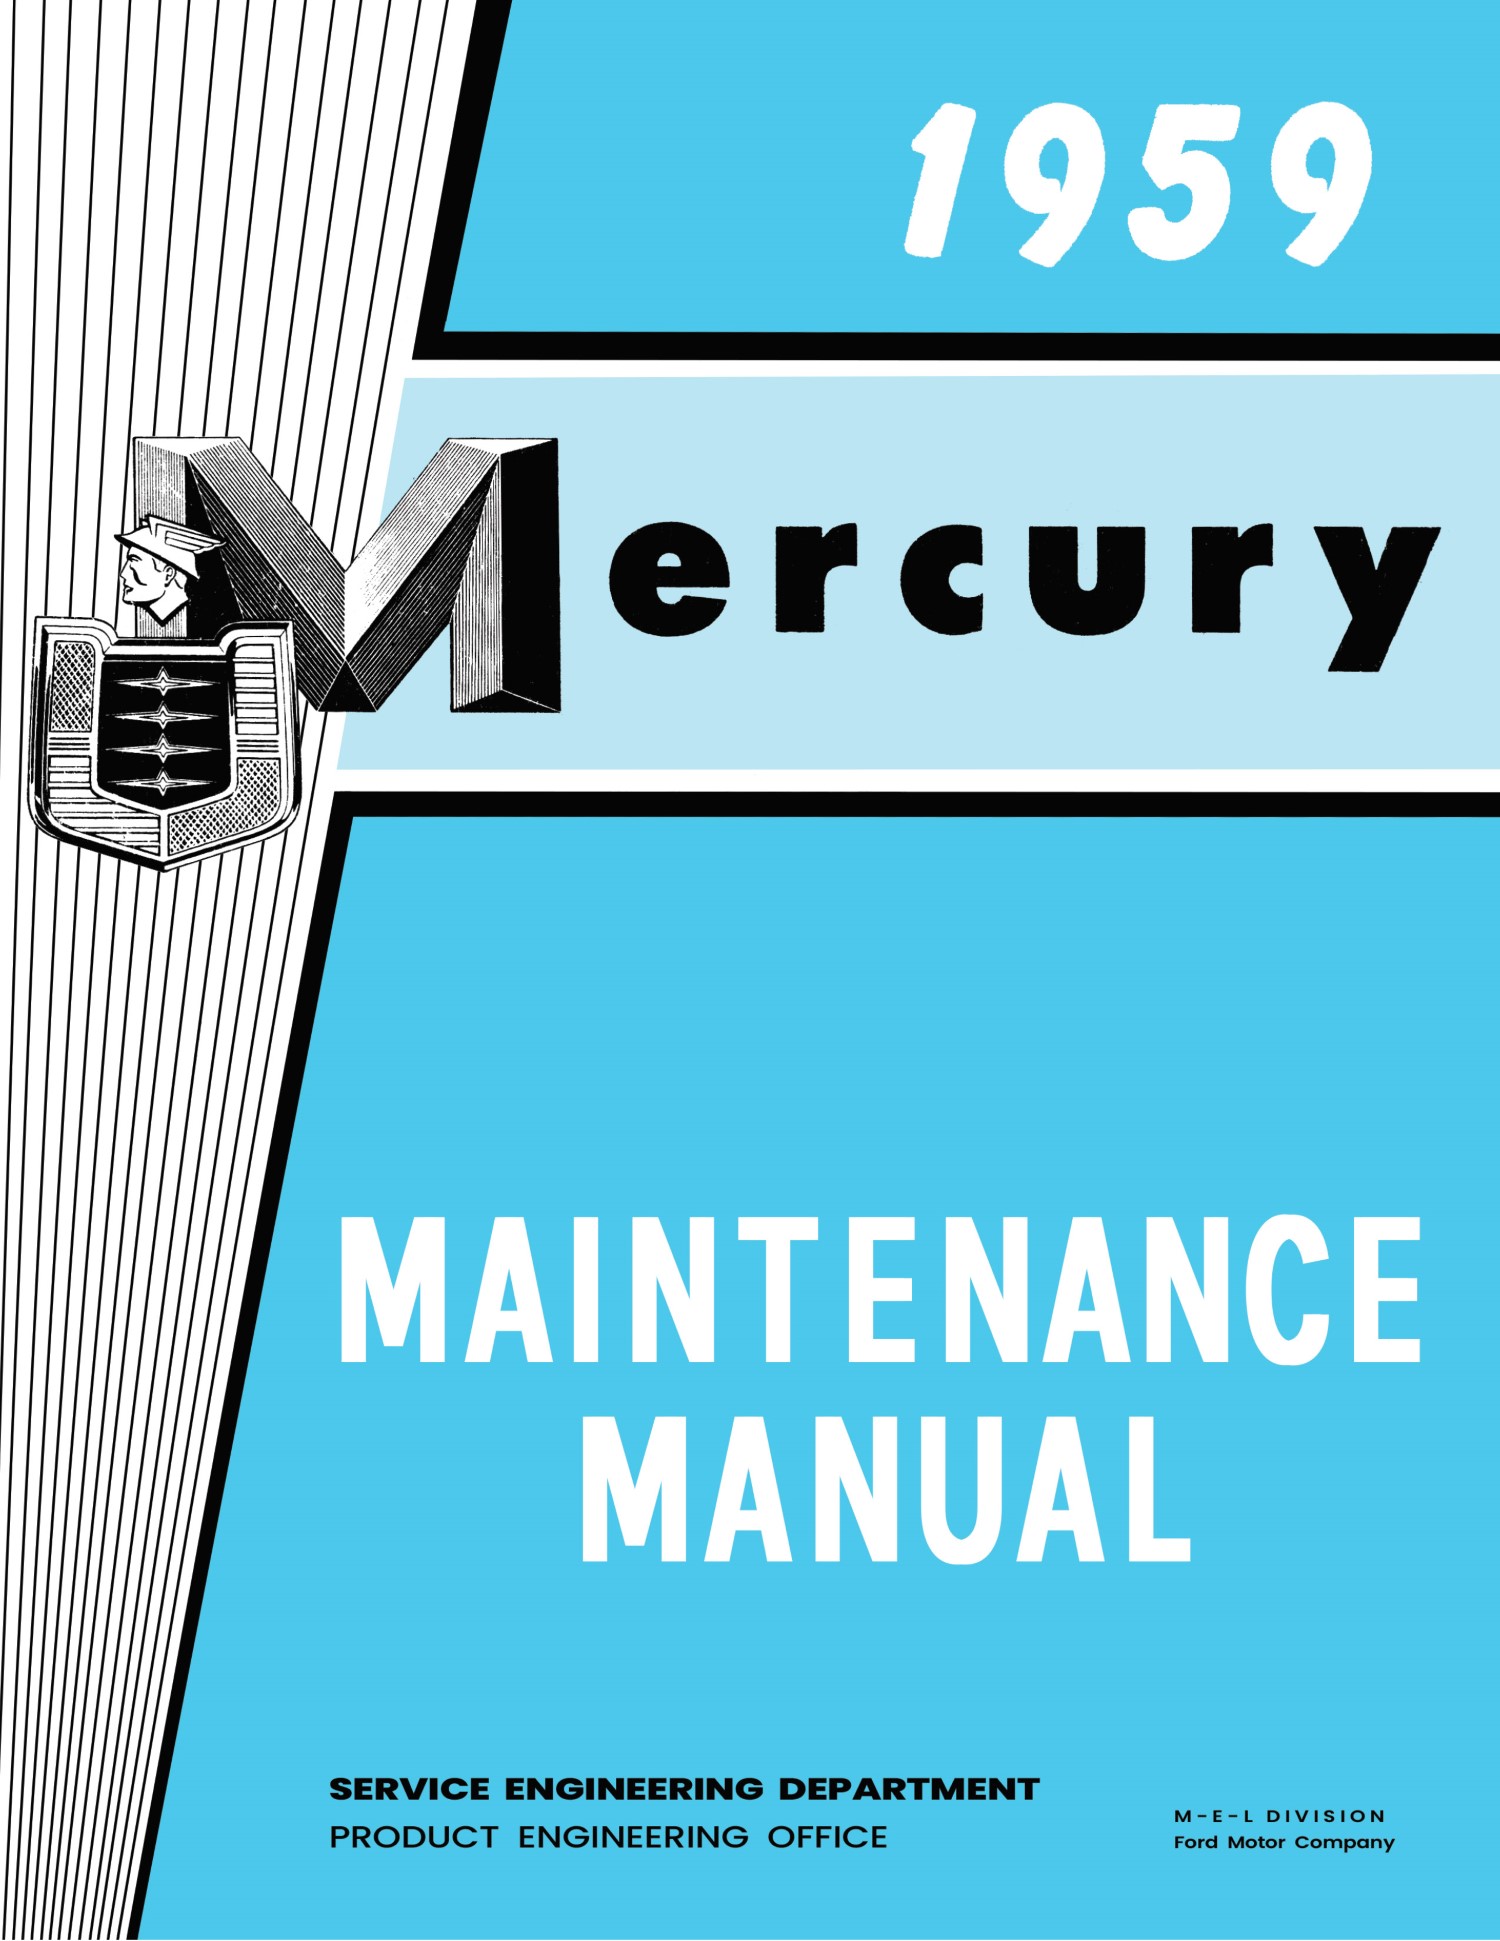 1959 Mercury Maintenance Manual